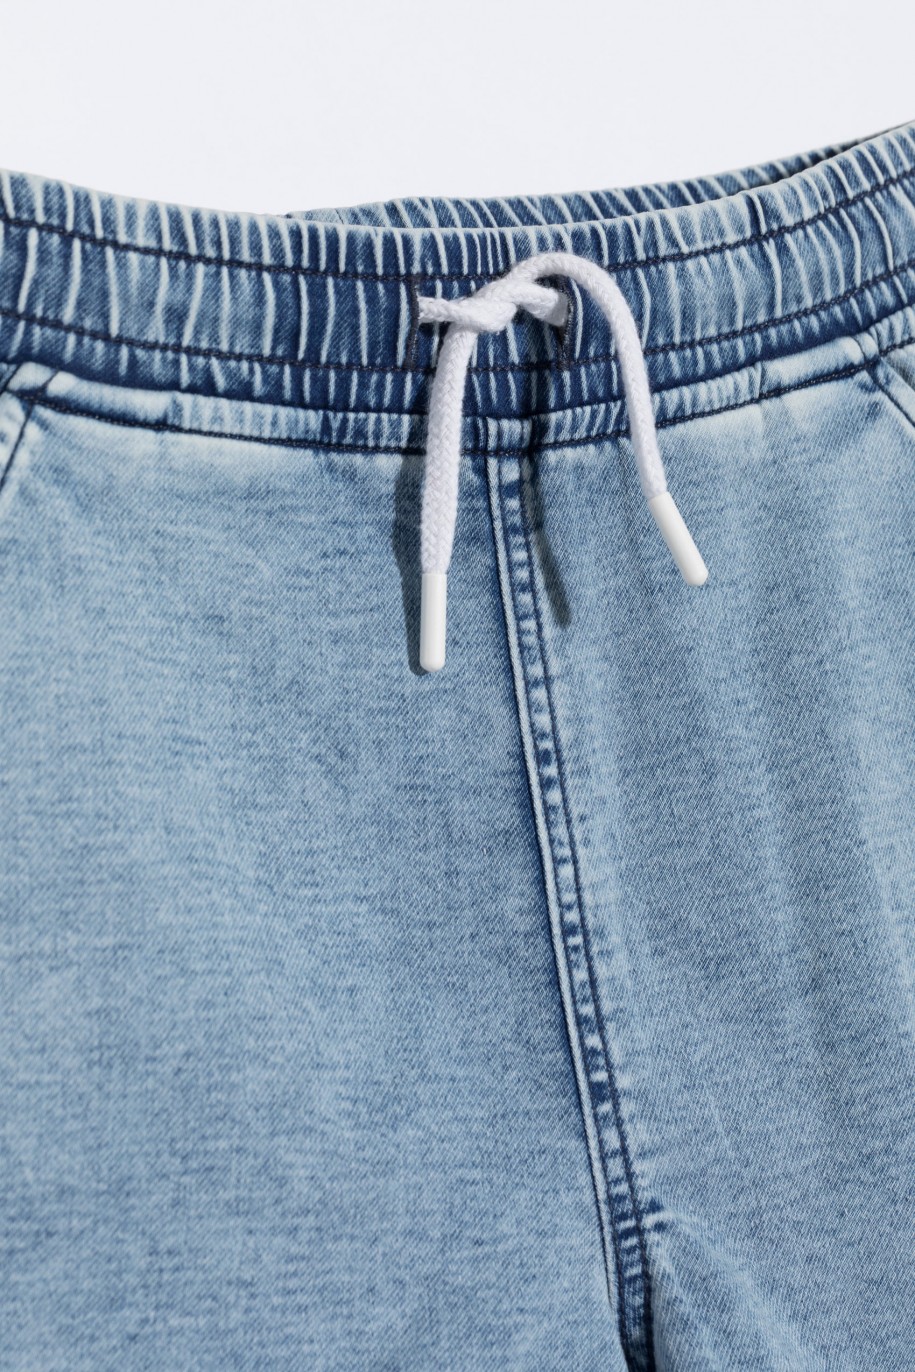 Jasnoniebieskie krótkie spodenki jeansowe z wywijanymi nogawkami - 46788